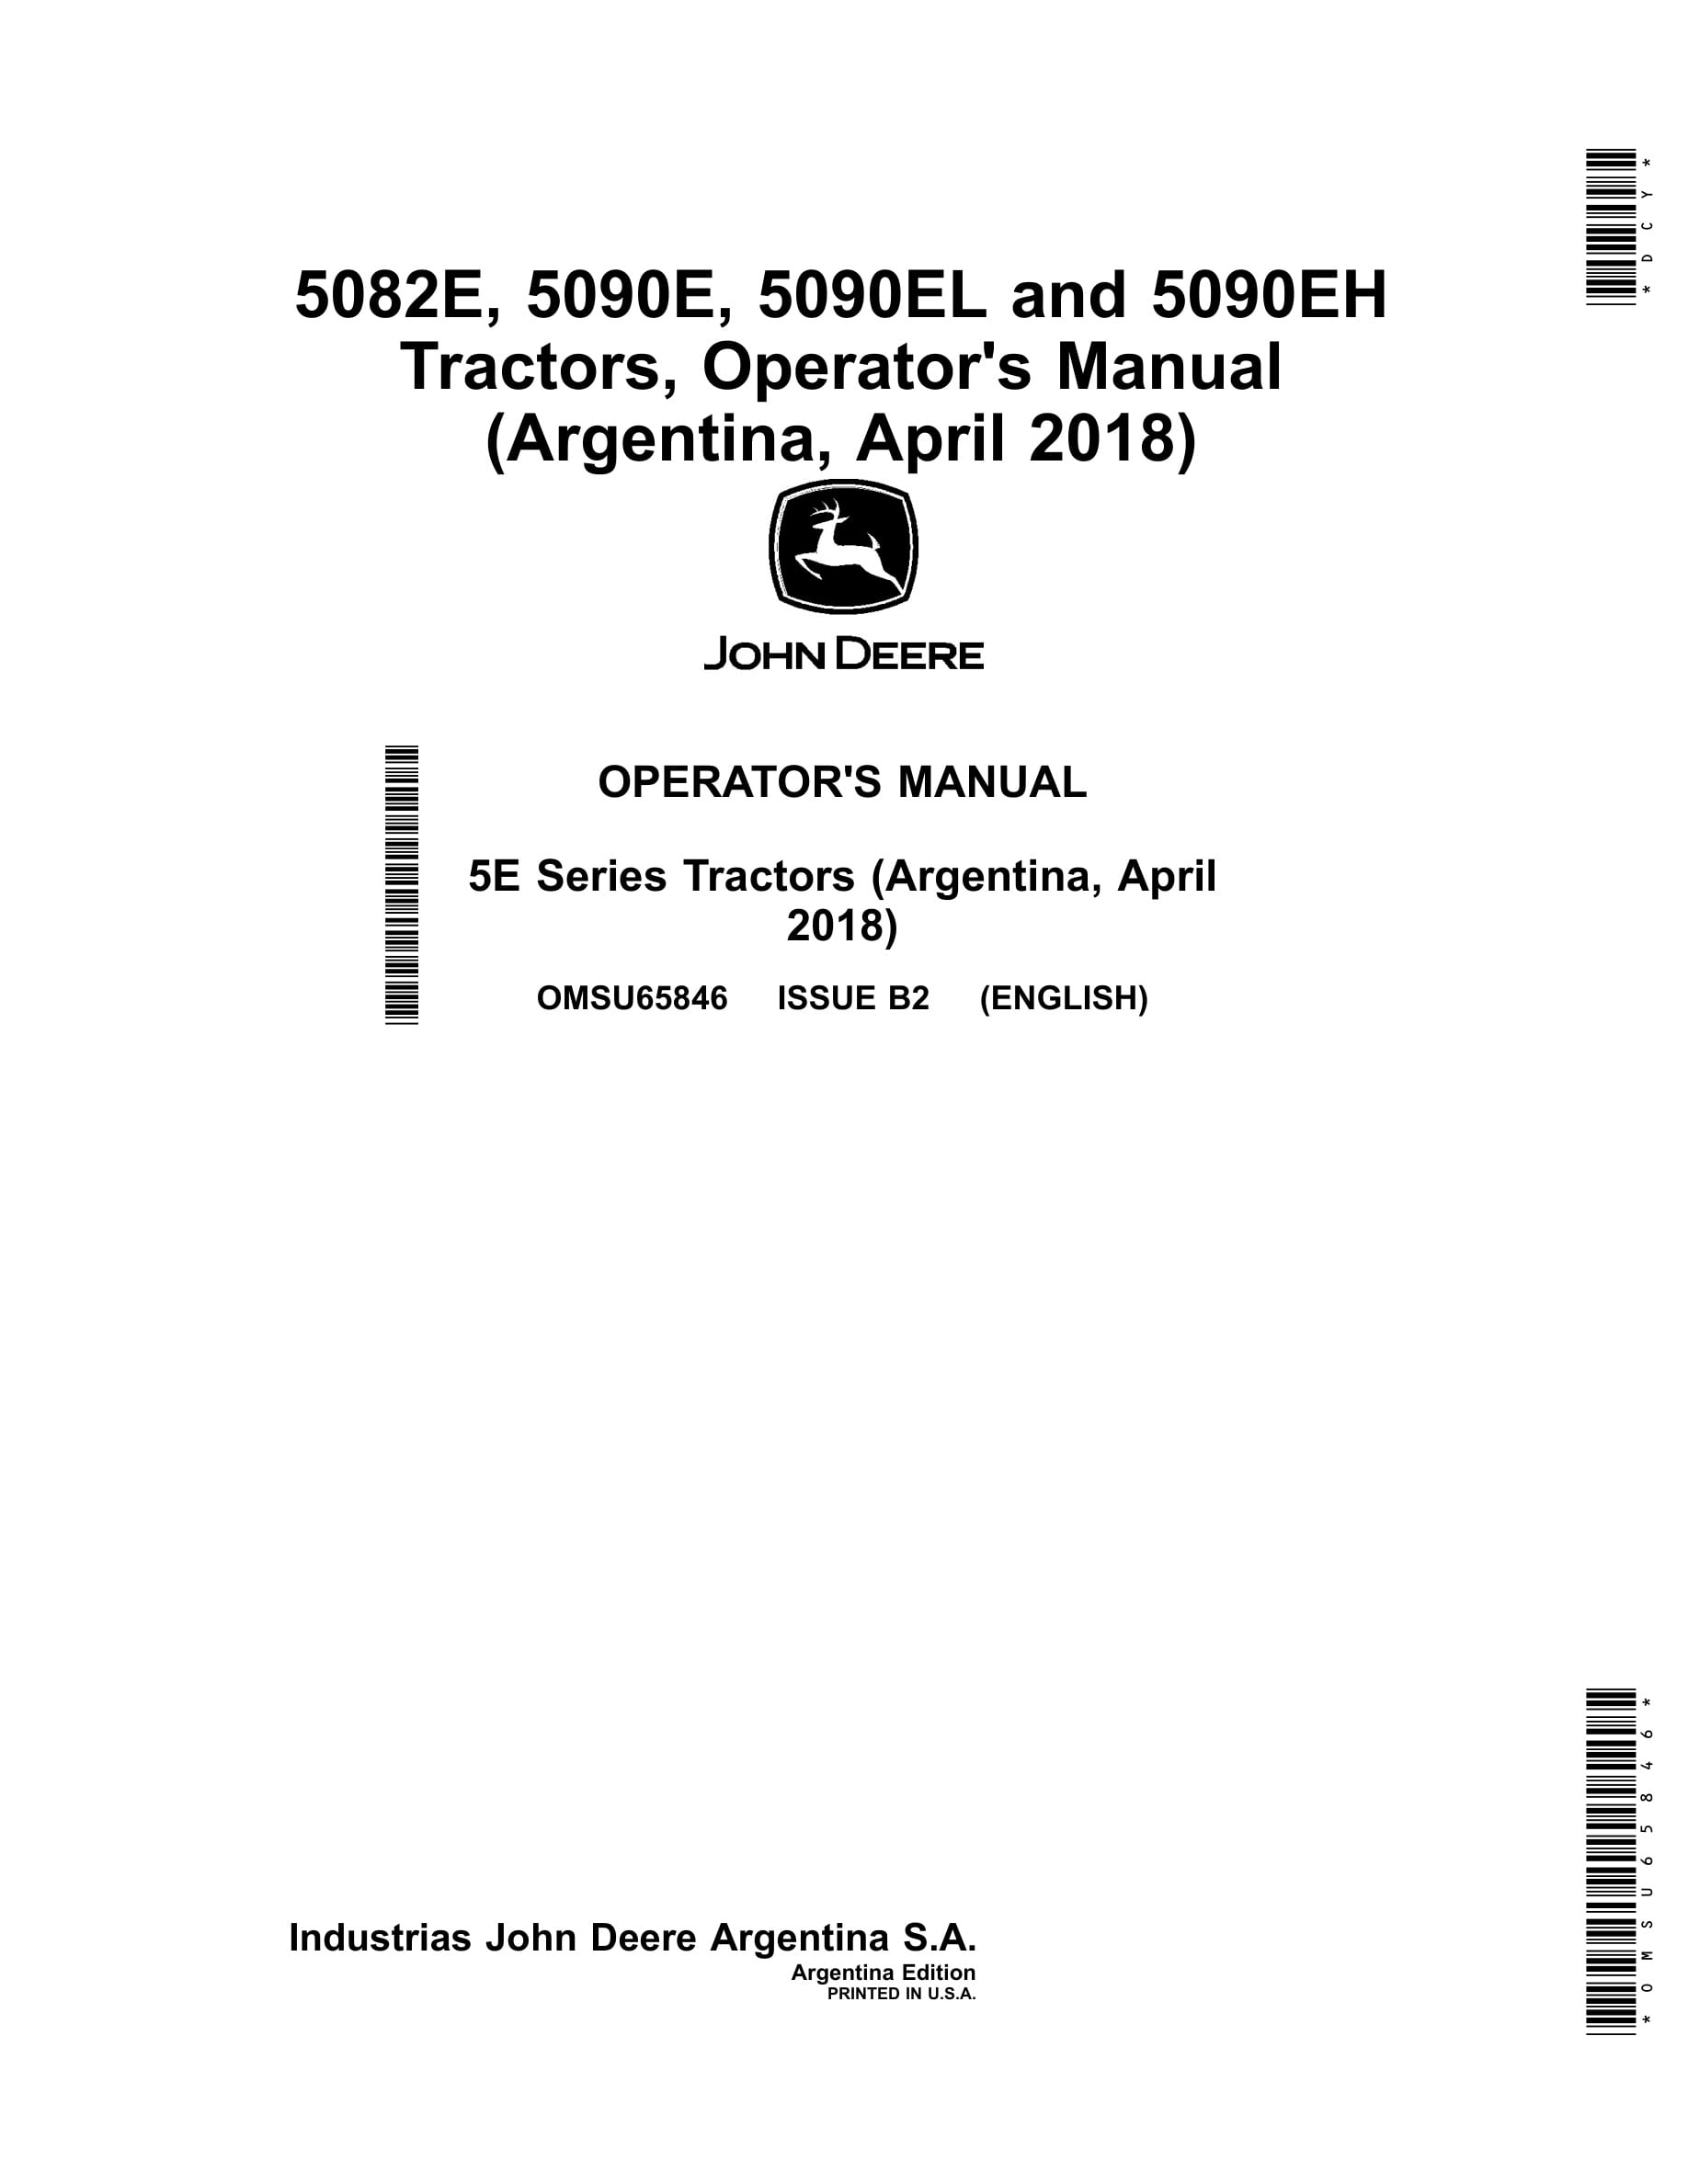 John Deere 5082e, 5090e, 5090el And 5090eh Tractors Operator Manuals OMSU65846-1